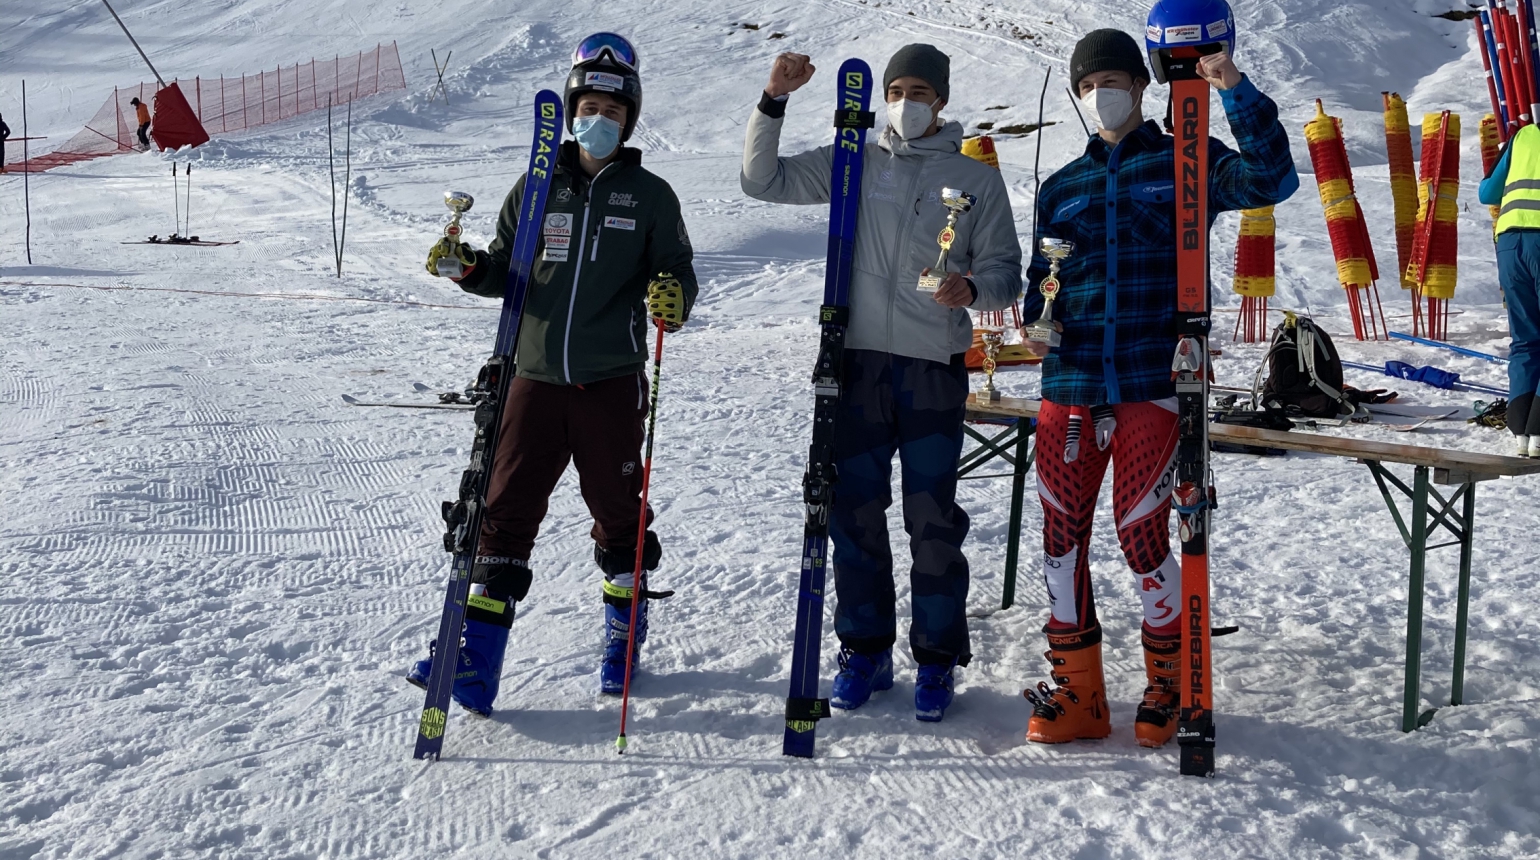 Výsledkový servis: Paulus 2. na mistrovství Slovinska, Koula zlepšil body 4. místem na Pass Thurn a prvním rokem juniorka Semeráková 1. ve slalomu FIS v Polsku